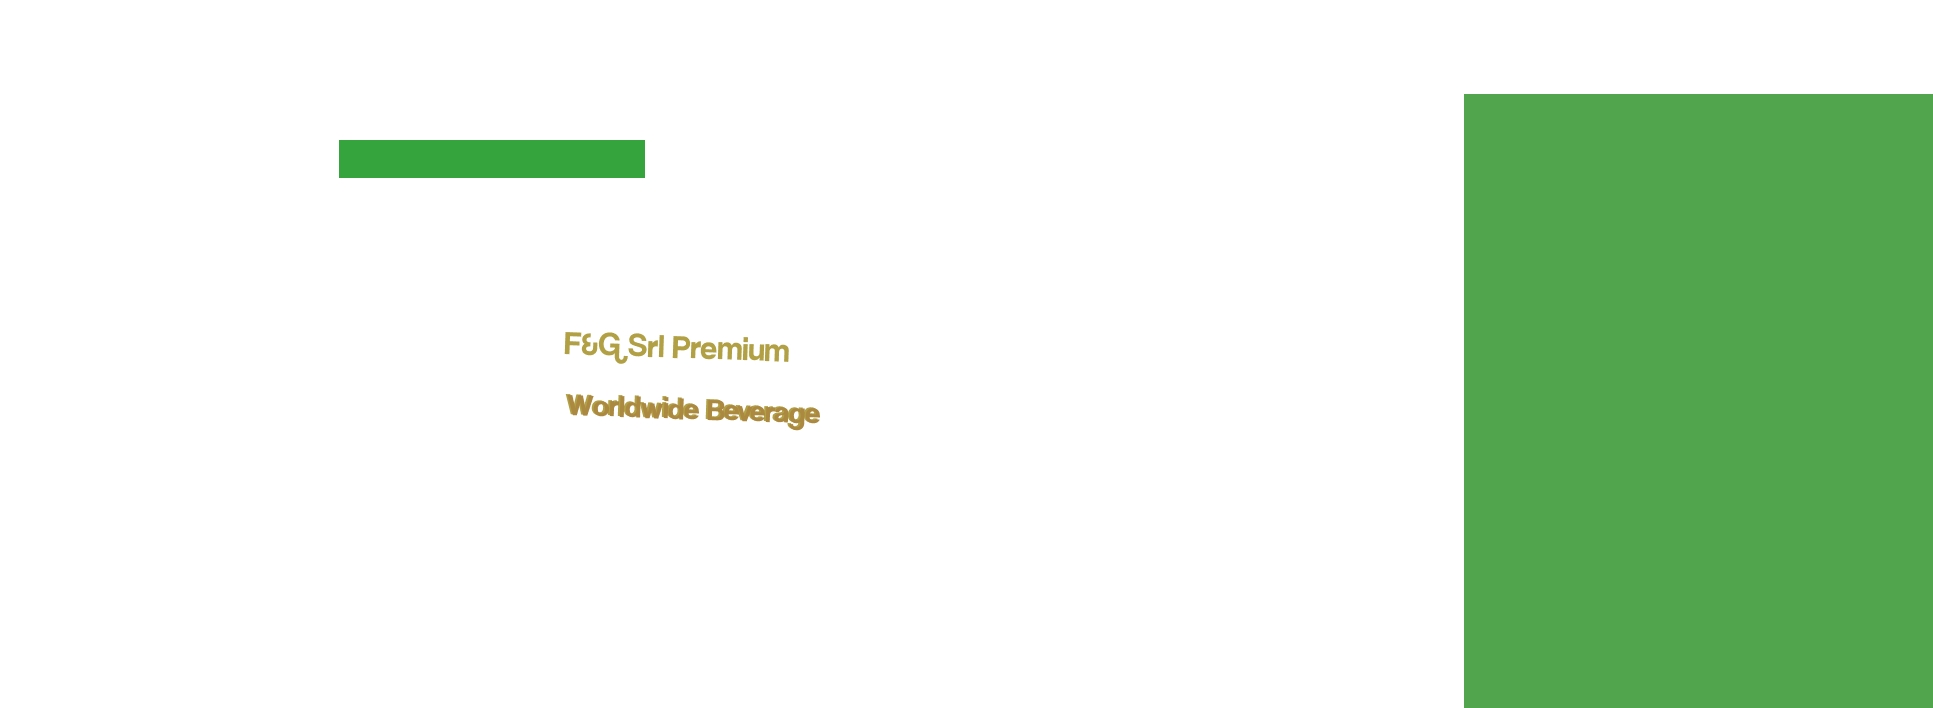 logo F&G Srl Premium Worldwide Beverage